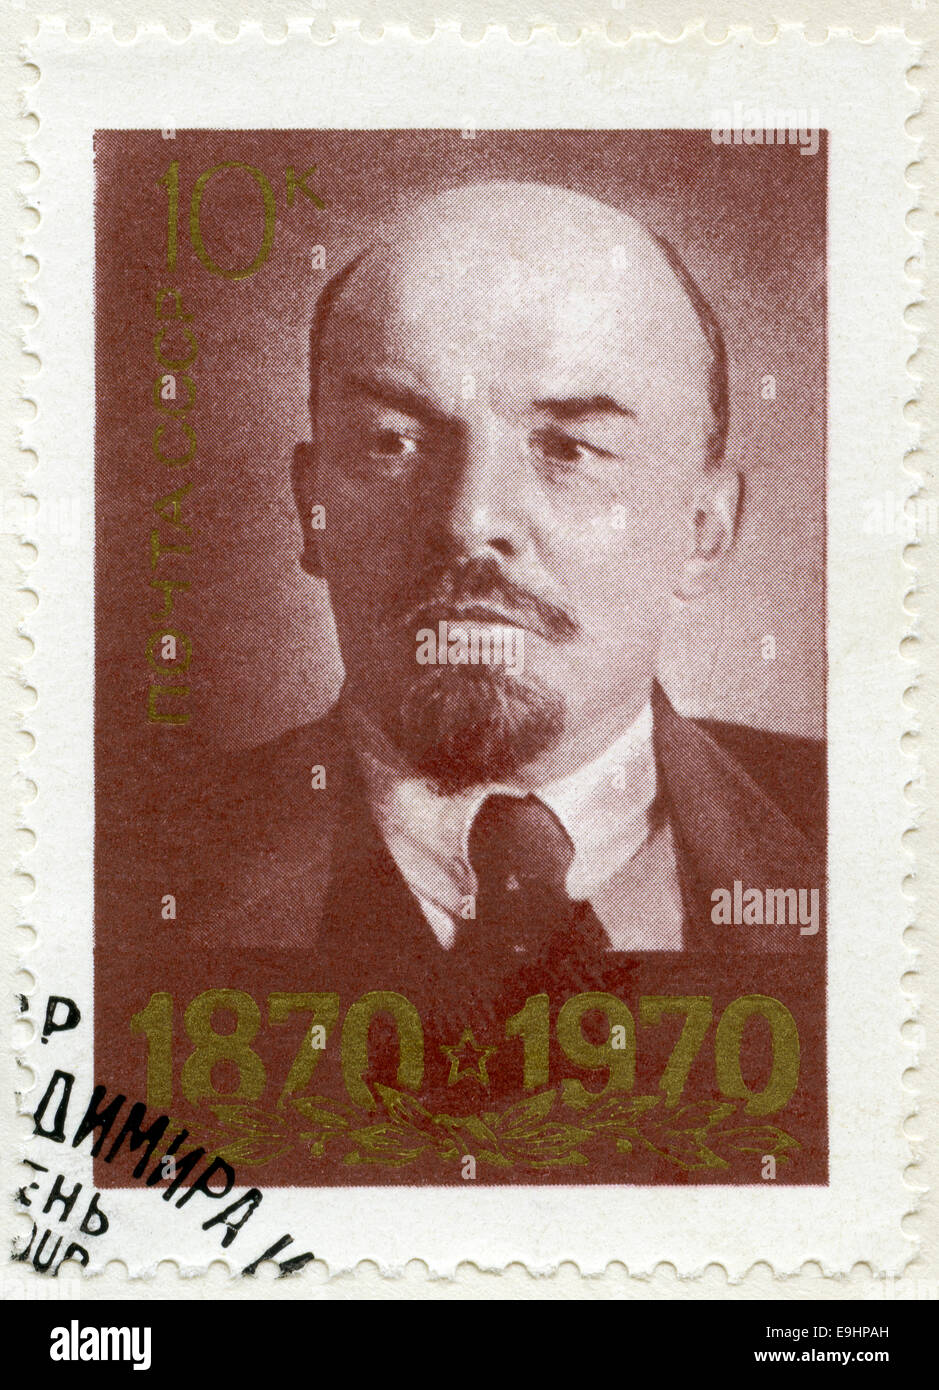 Urss - 1970 : affiche portrait de Vladimir Ilitch Lénine (1870-1924) Banque D'Images